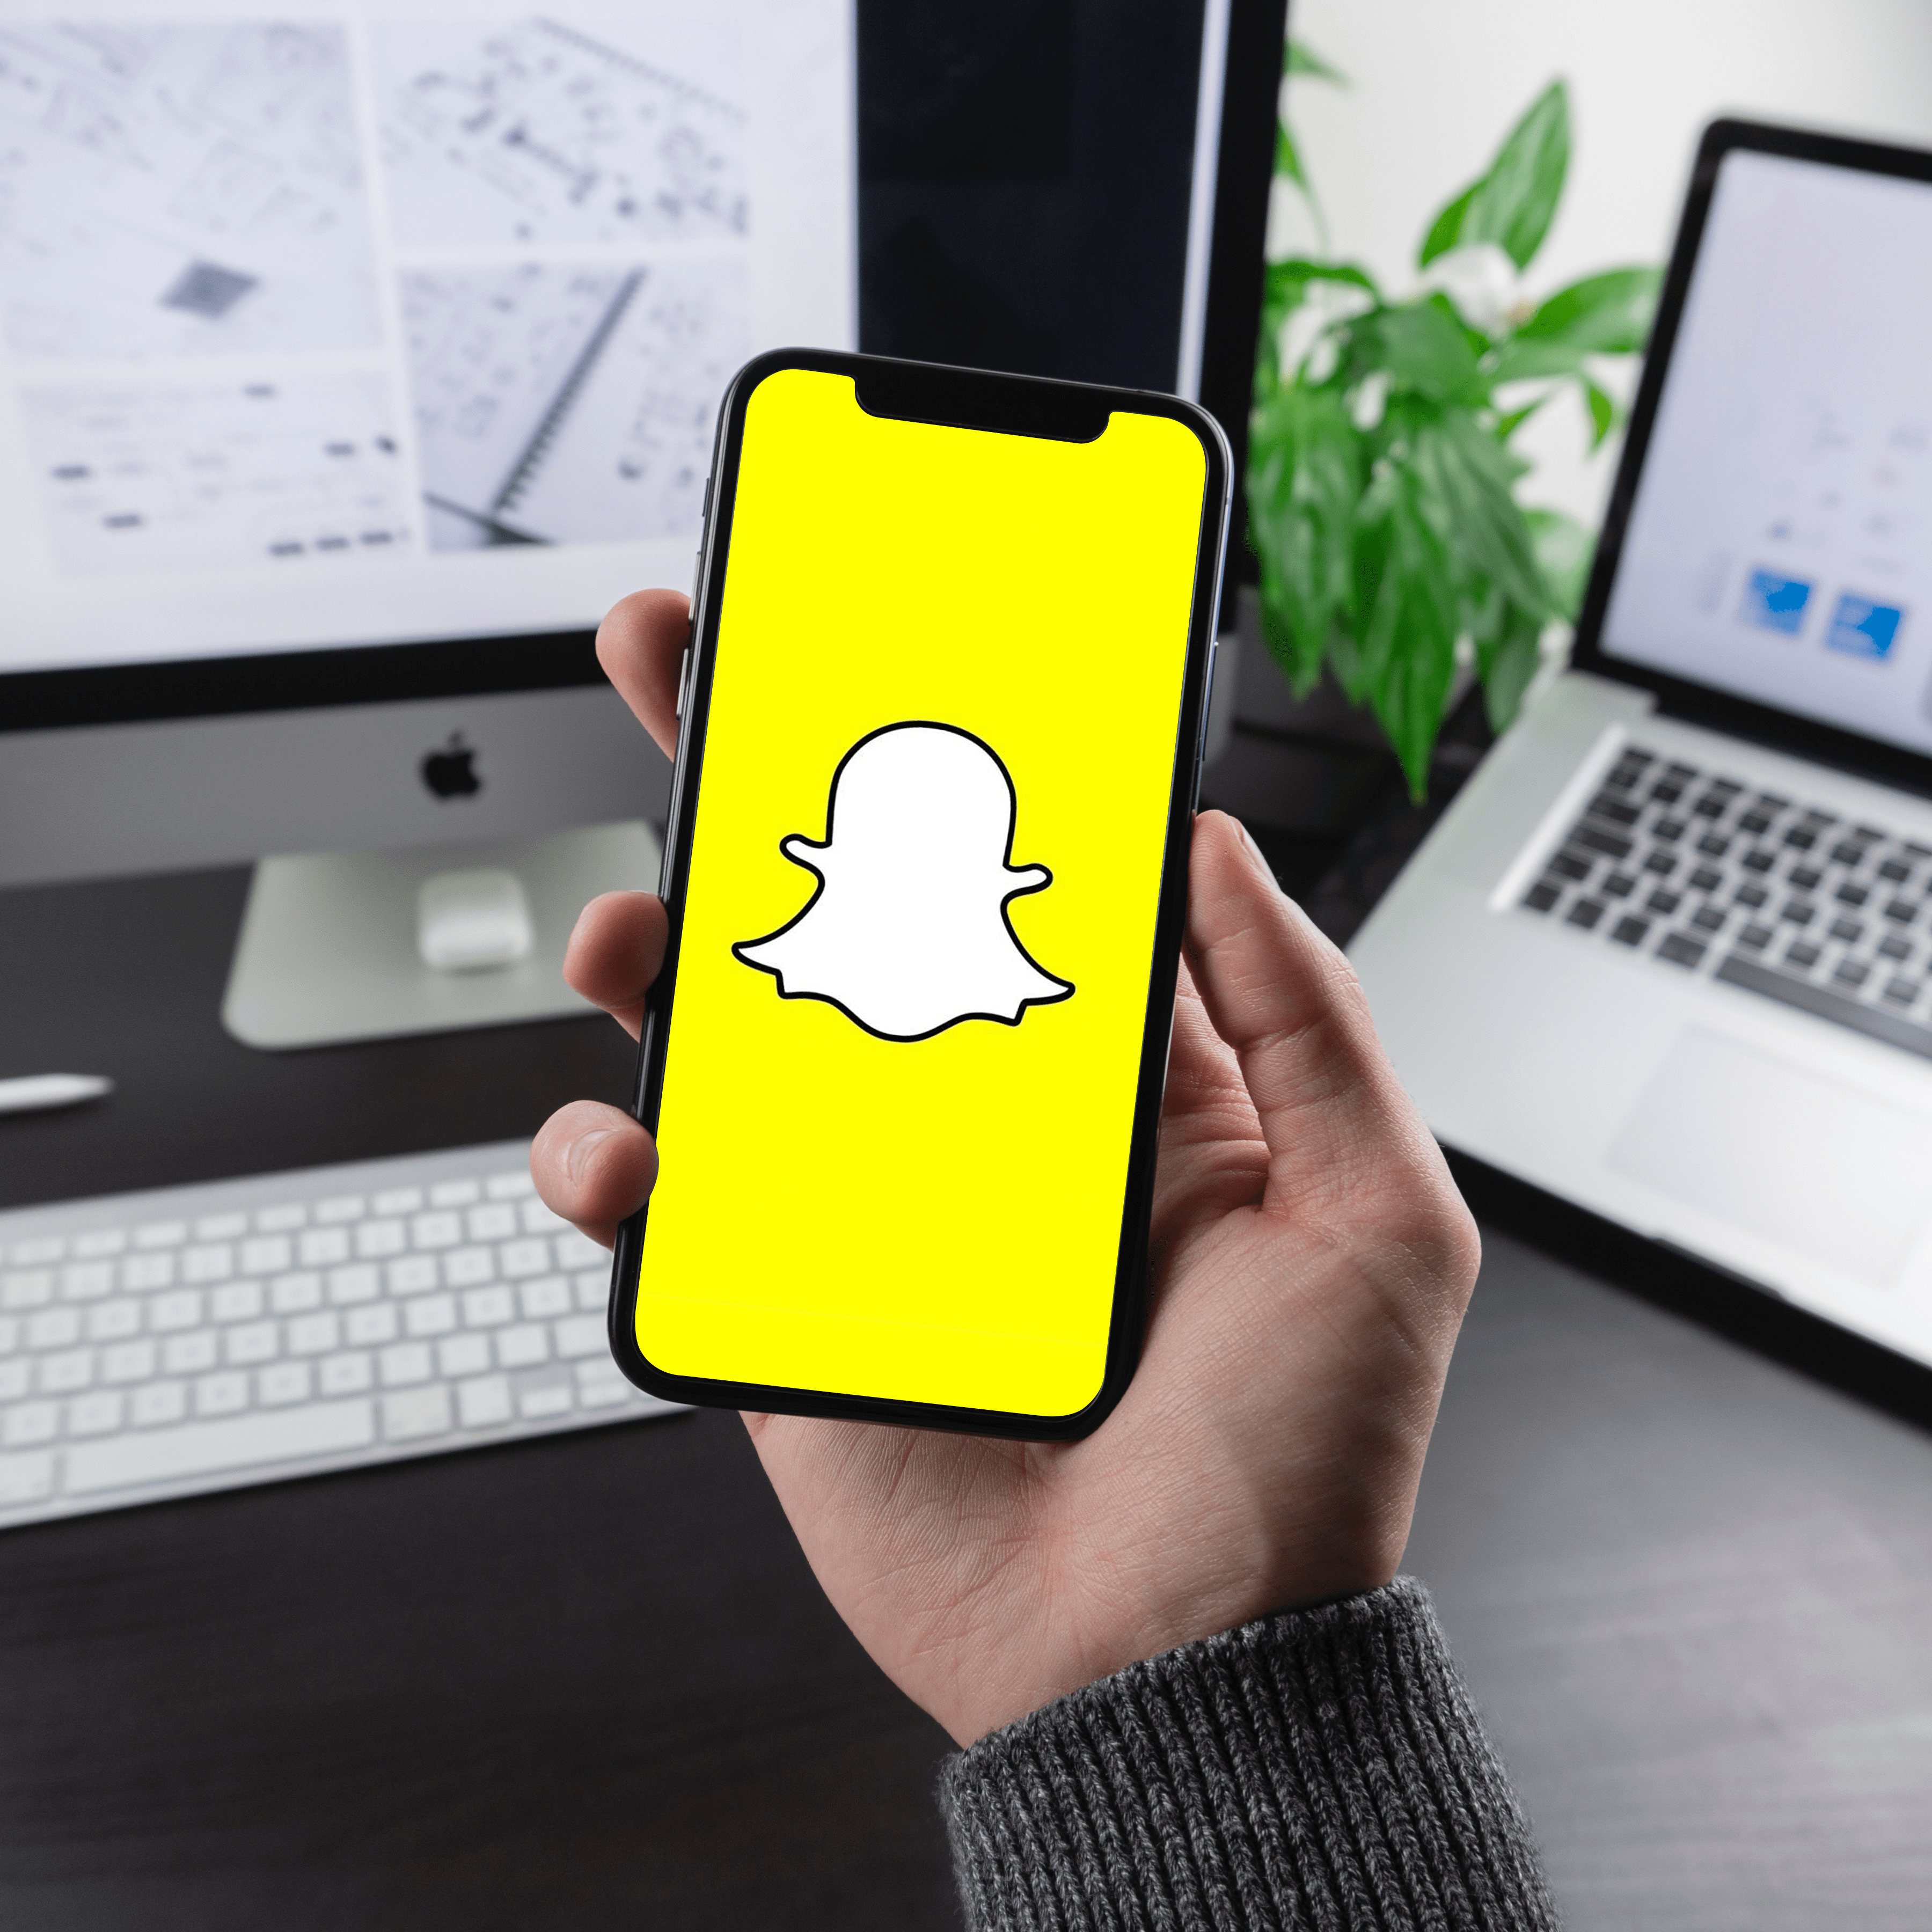 Come abilitare le notifiche su Snapchat